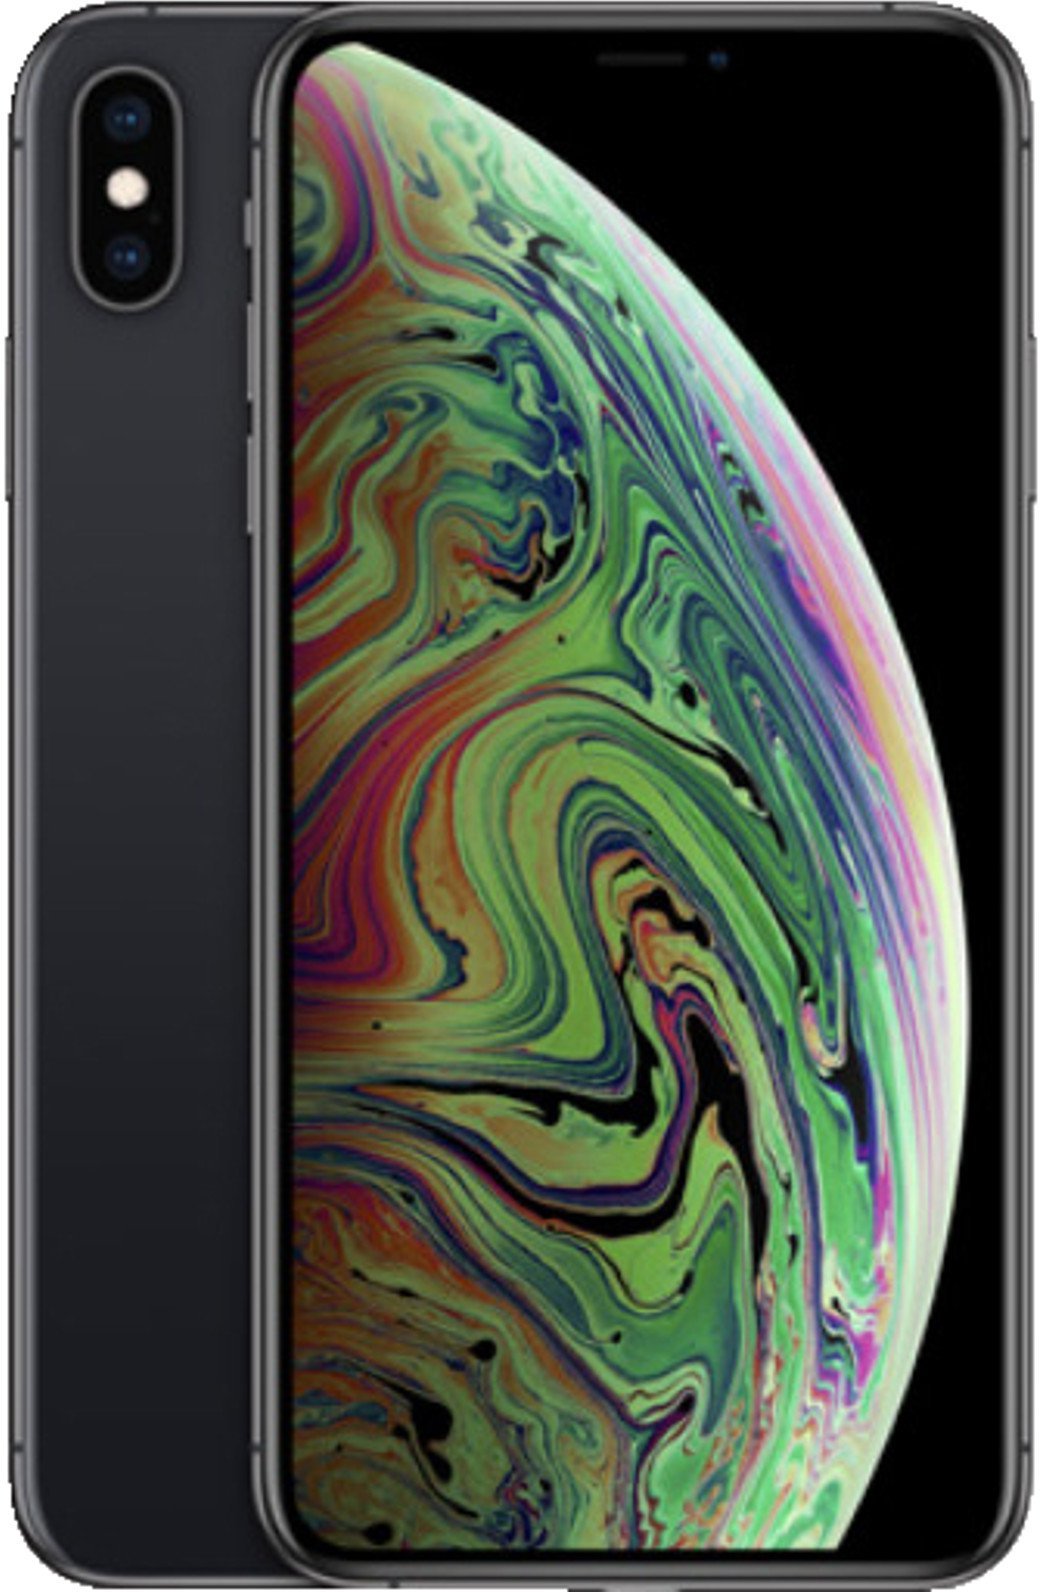 Apple Iphone Xs Max Ohne Vertrag Gunstig Kaufen Mobilcom Debitel